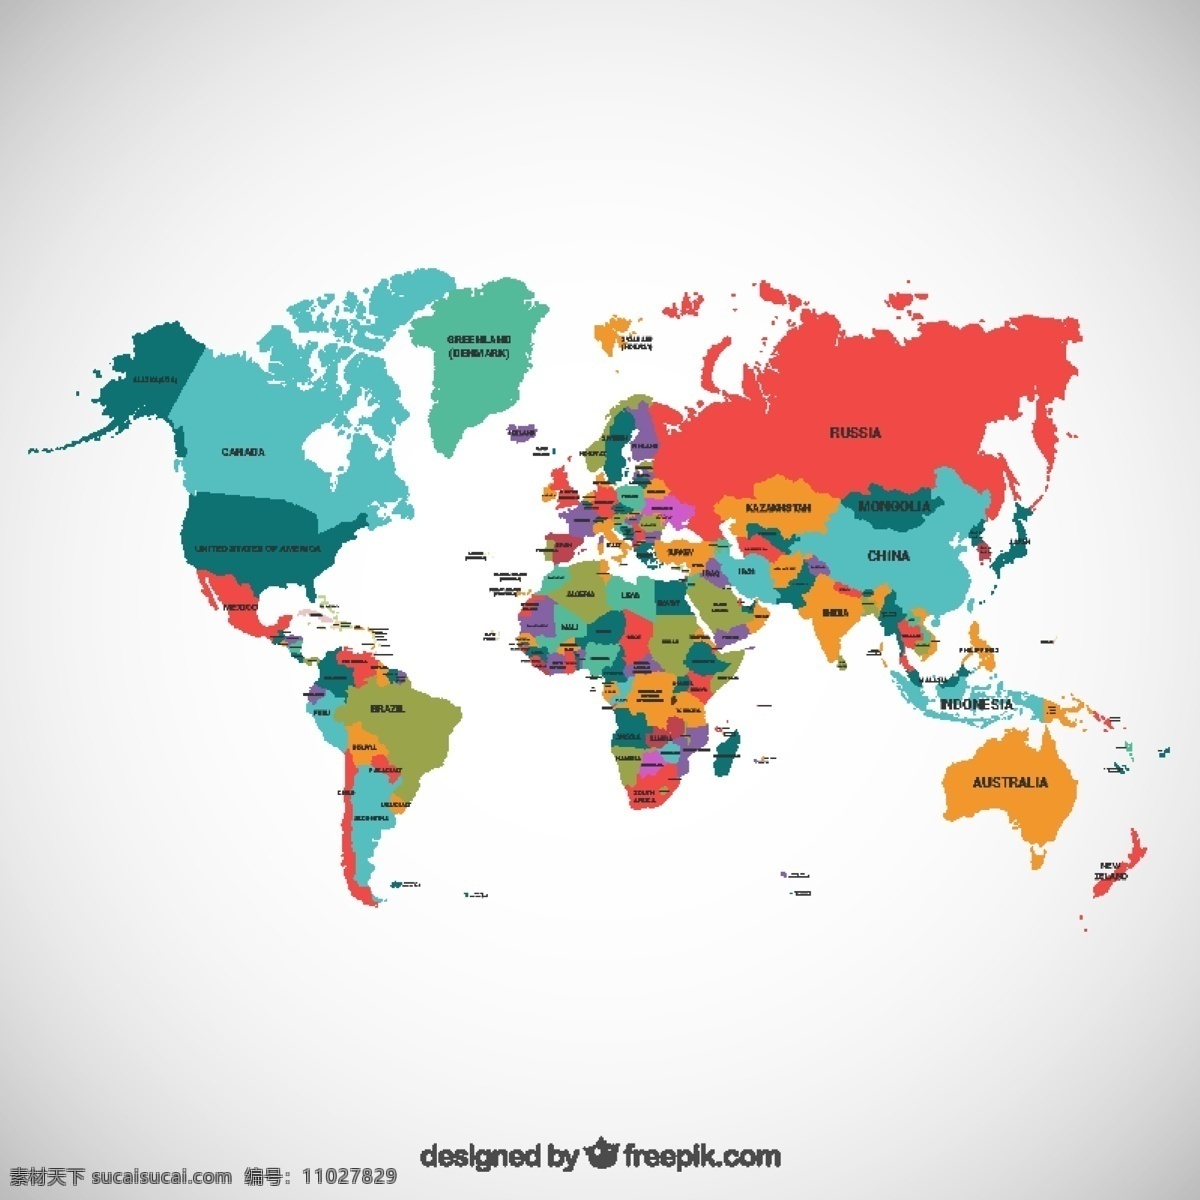 世界政治地图 旅游 地图 世界 地球 世界地图 欧洲 国家 政治 大陆 全球